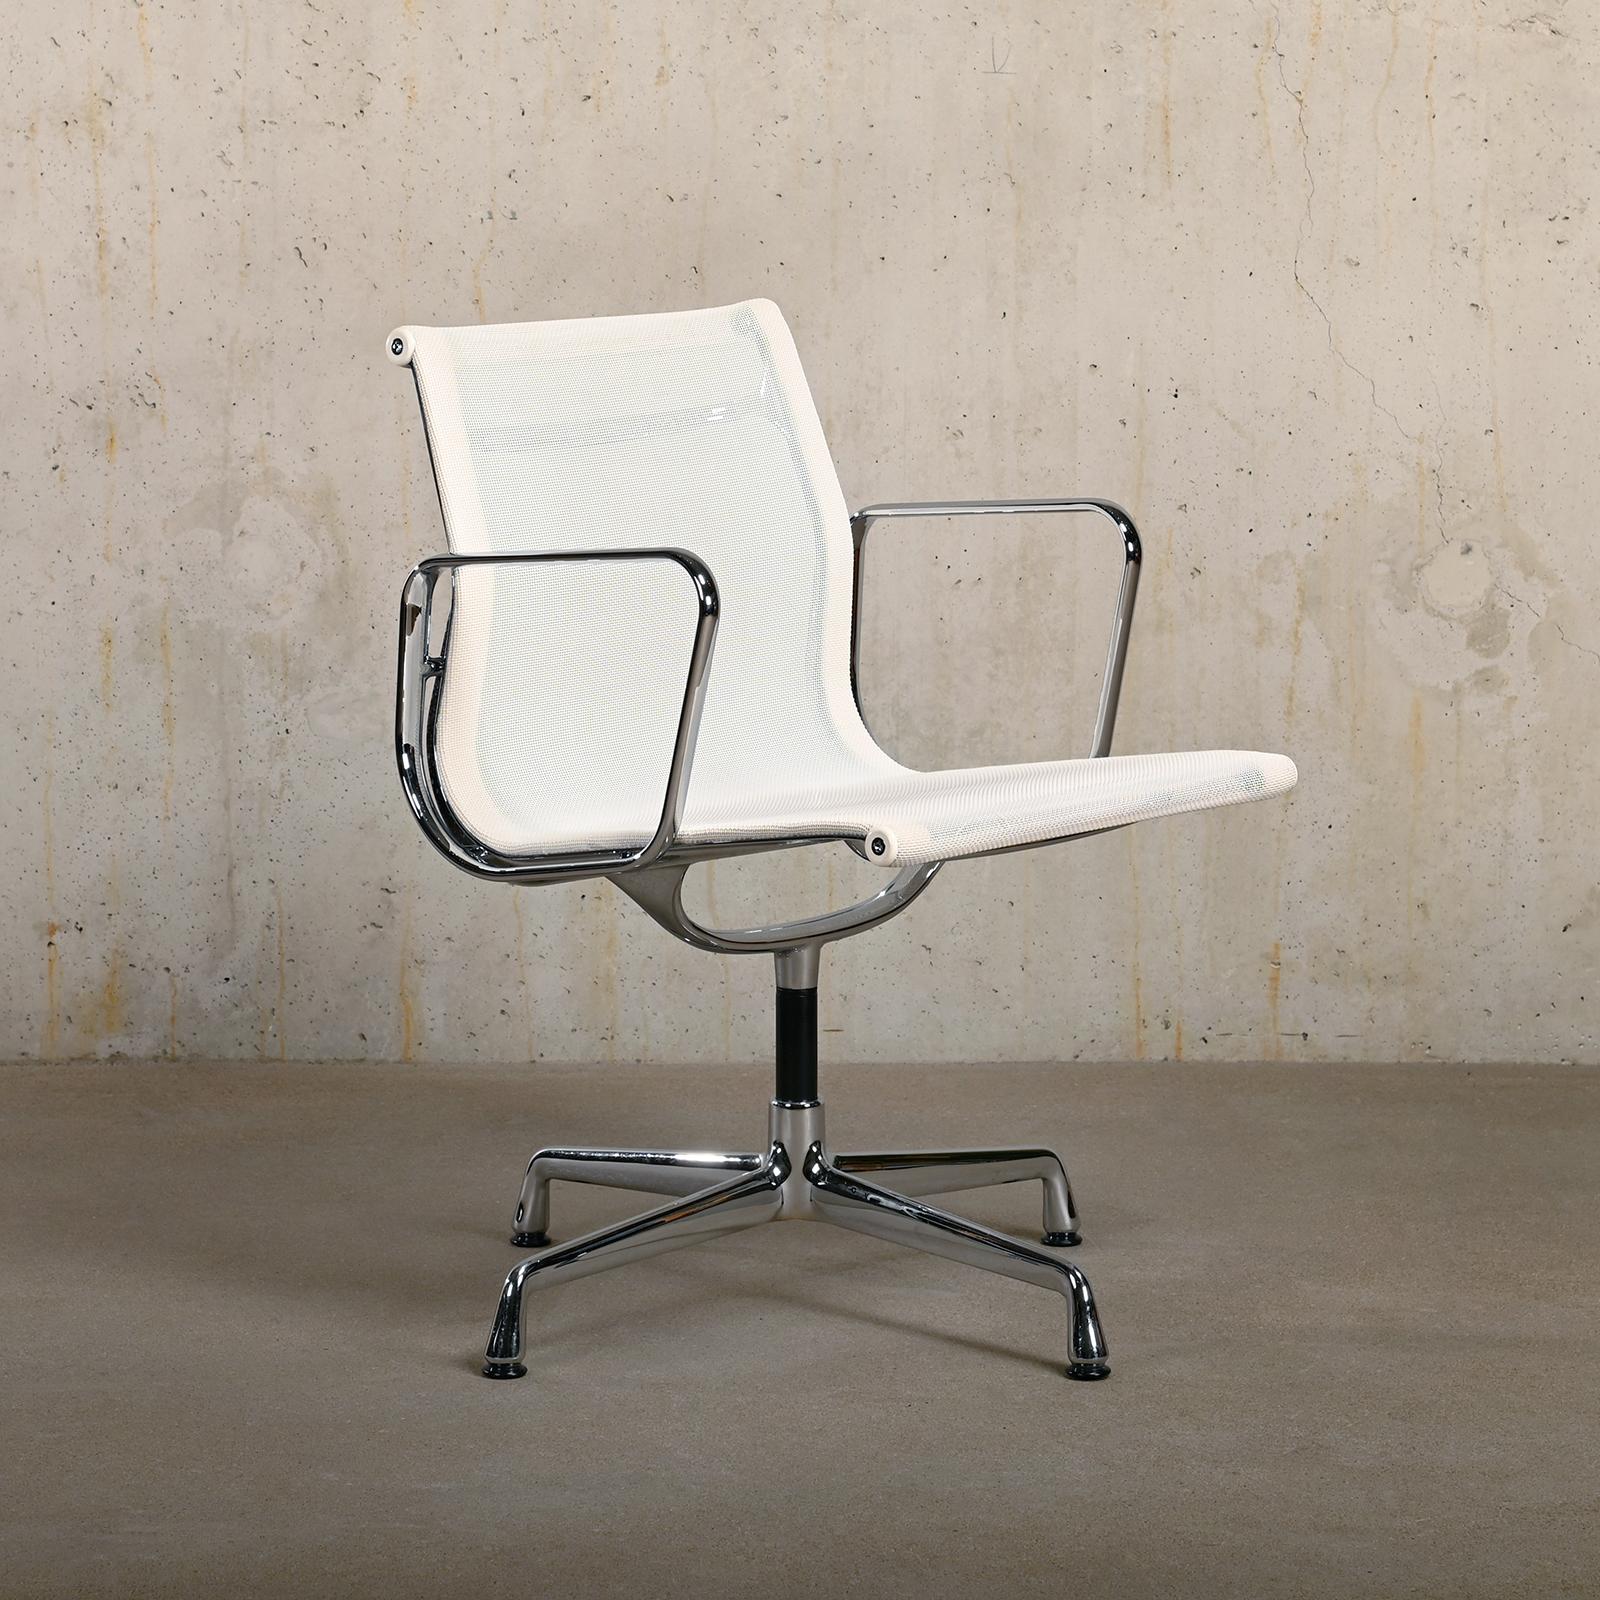 Chaise confortable de salle à manger et/ou de conférence EA108 appartenant à la série iconique Aluminium Series conçue par Charles & Ray Eames pour Herman Miller (US) / Vitra (EU). Le confort est garanti grâce au tissu Netweave Mesh et au mécanisme